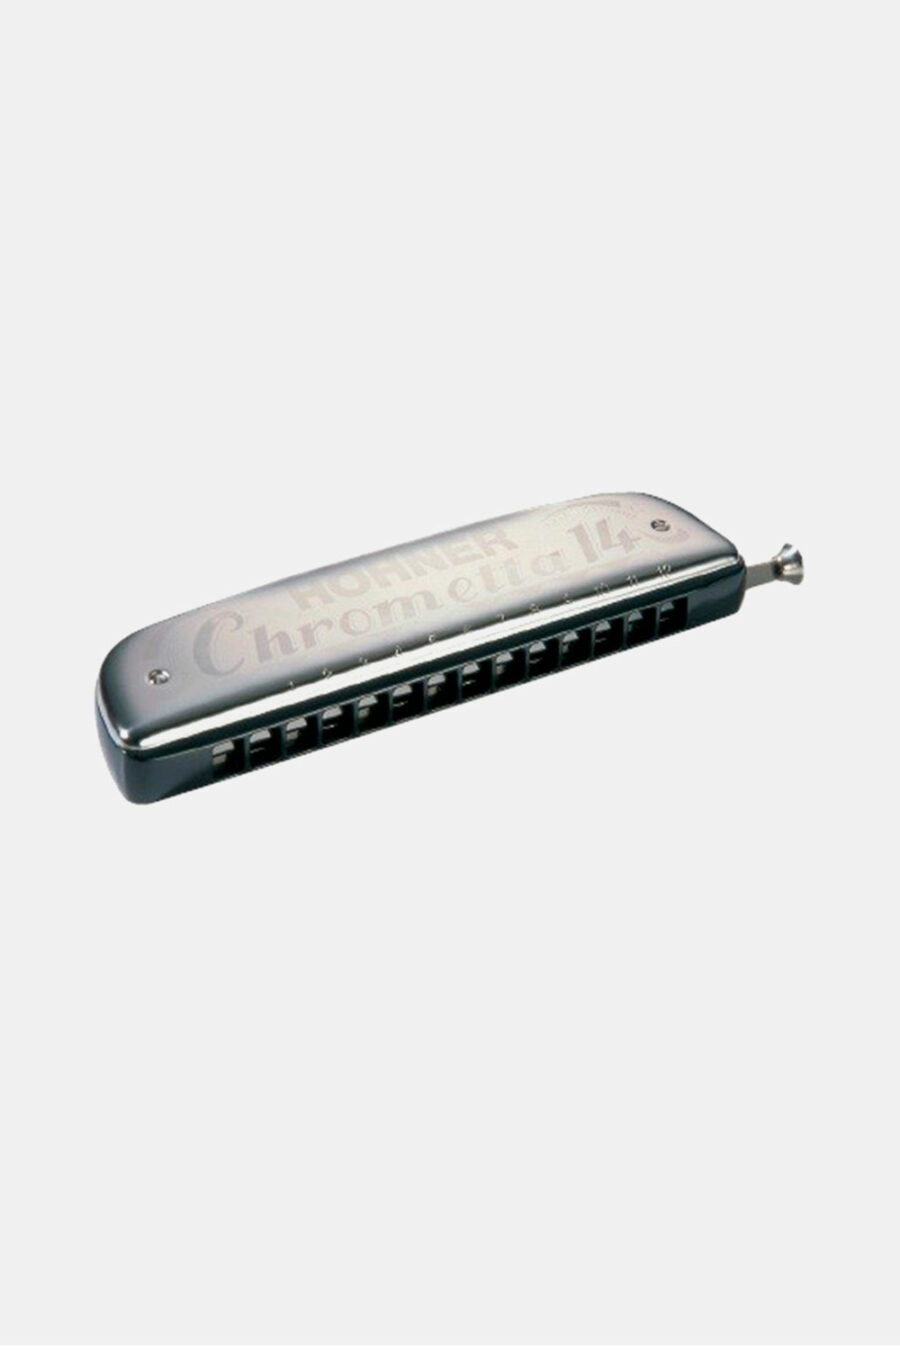 armonica-hohner-250-32-chrometta